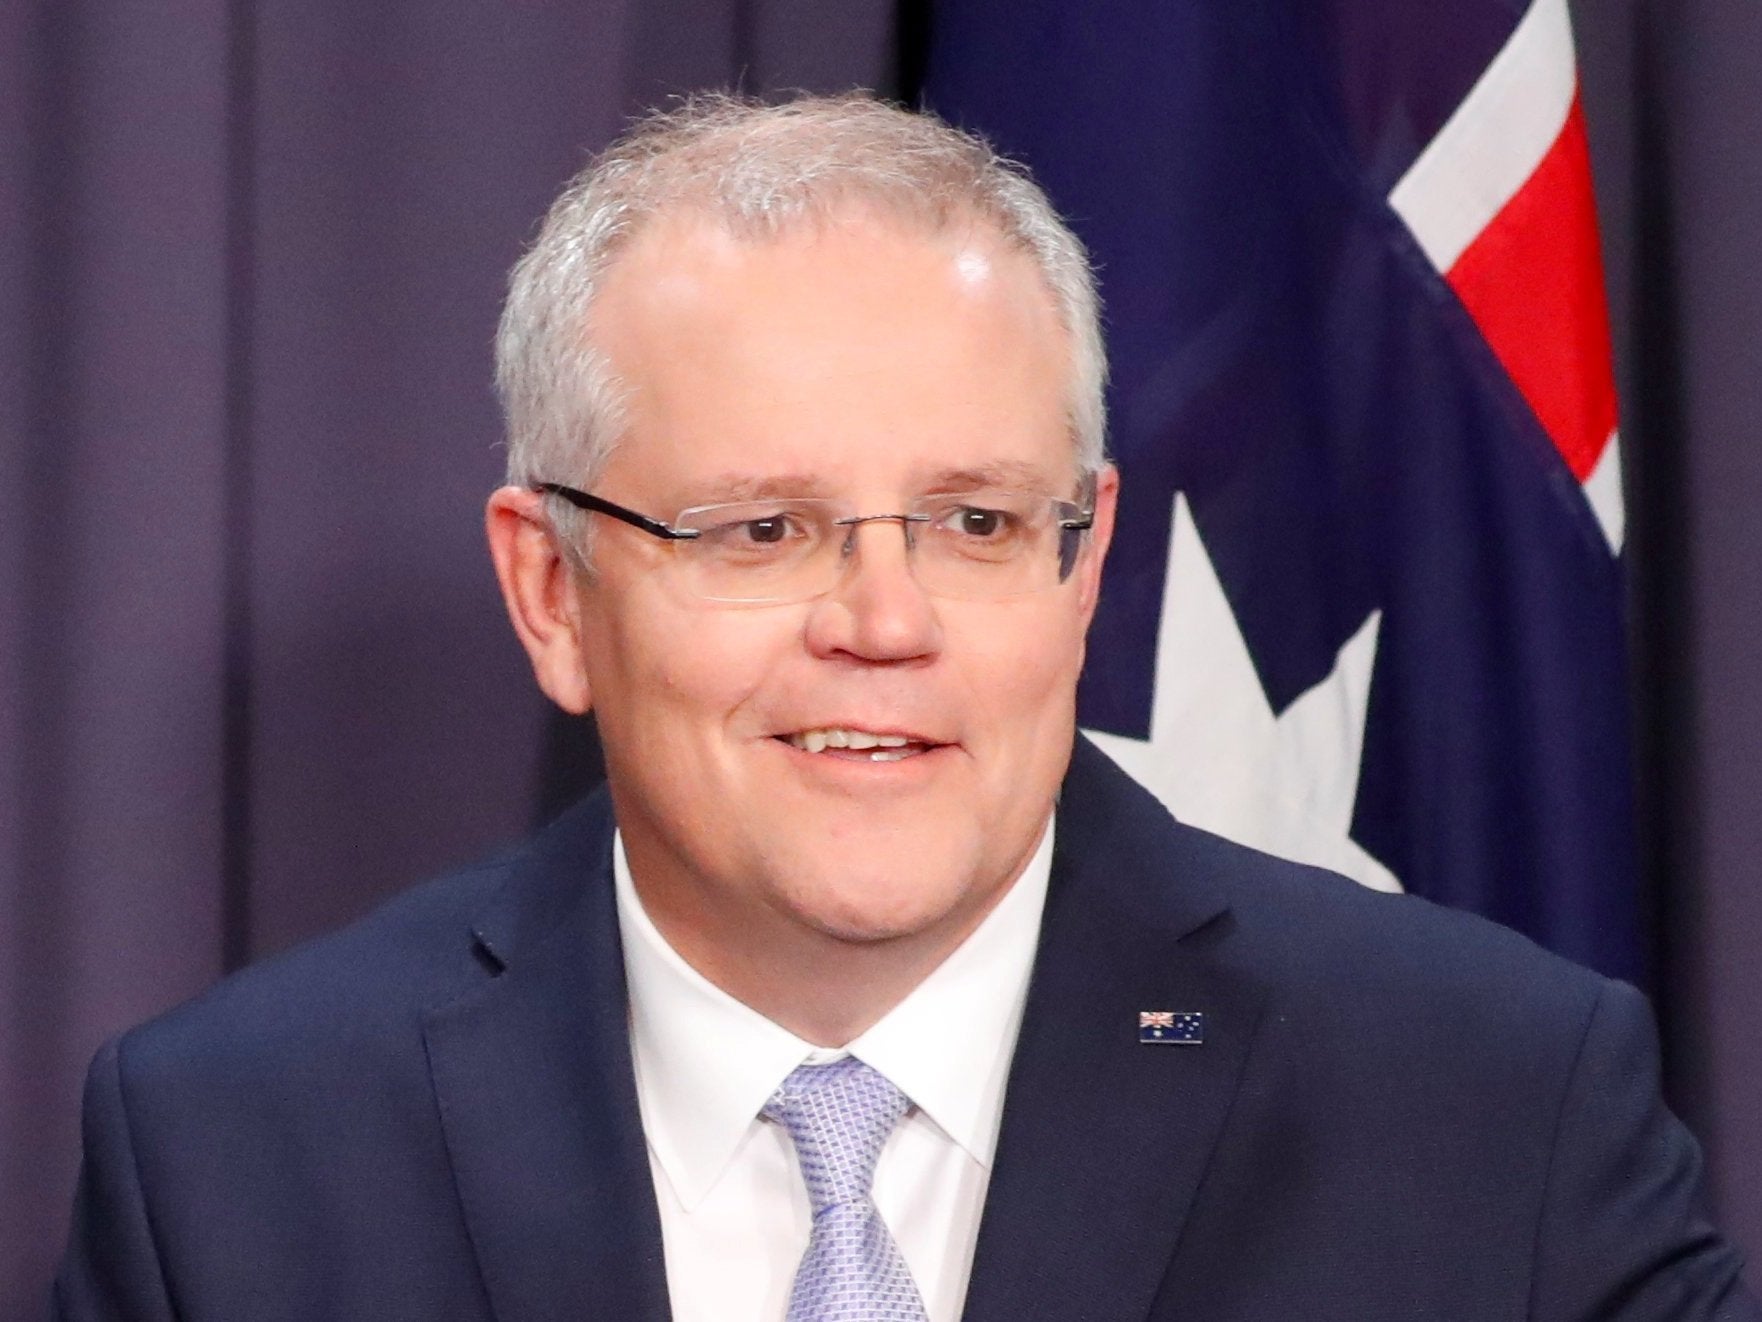 The new Australian Prime Minister, Scott Morrison